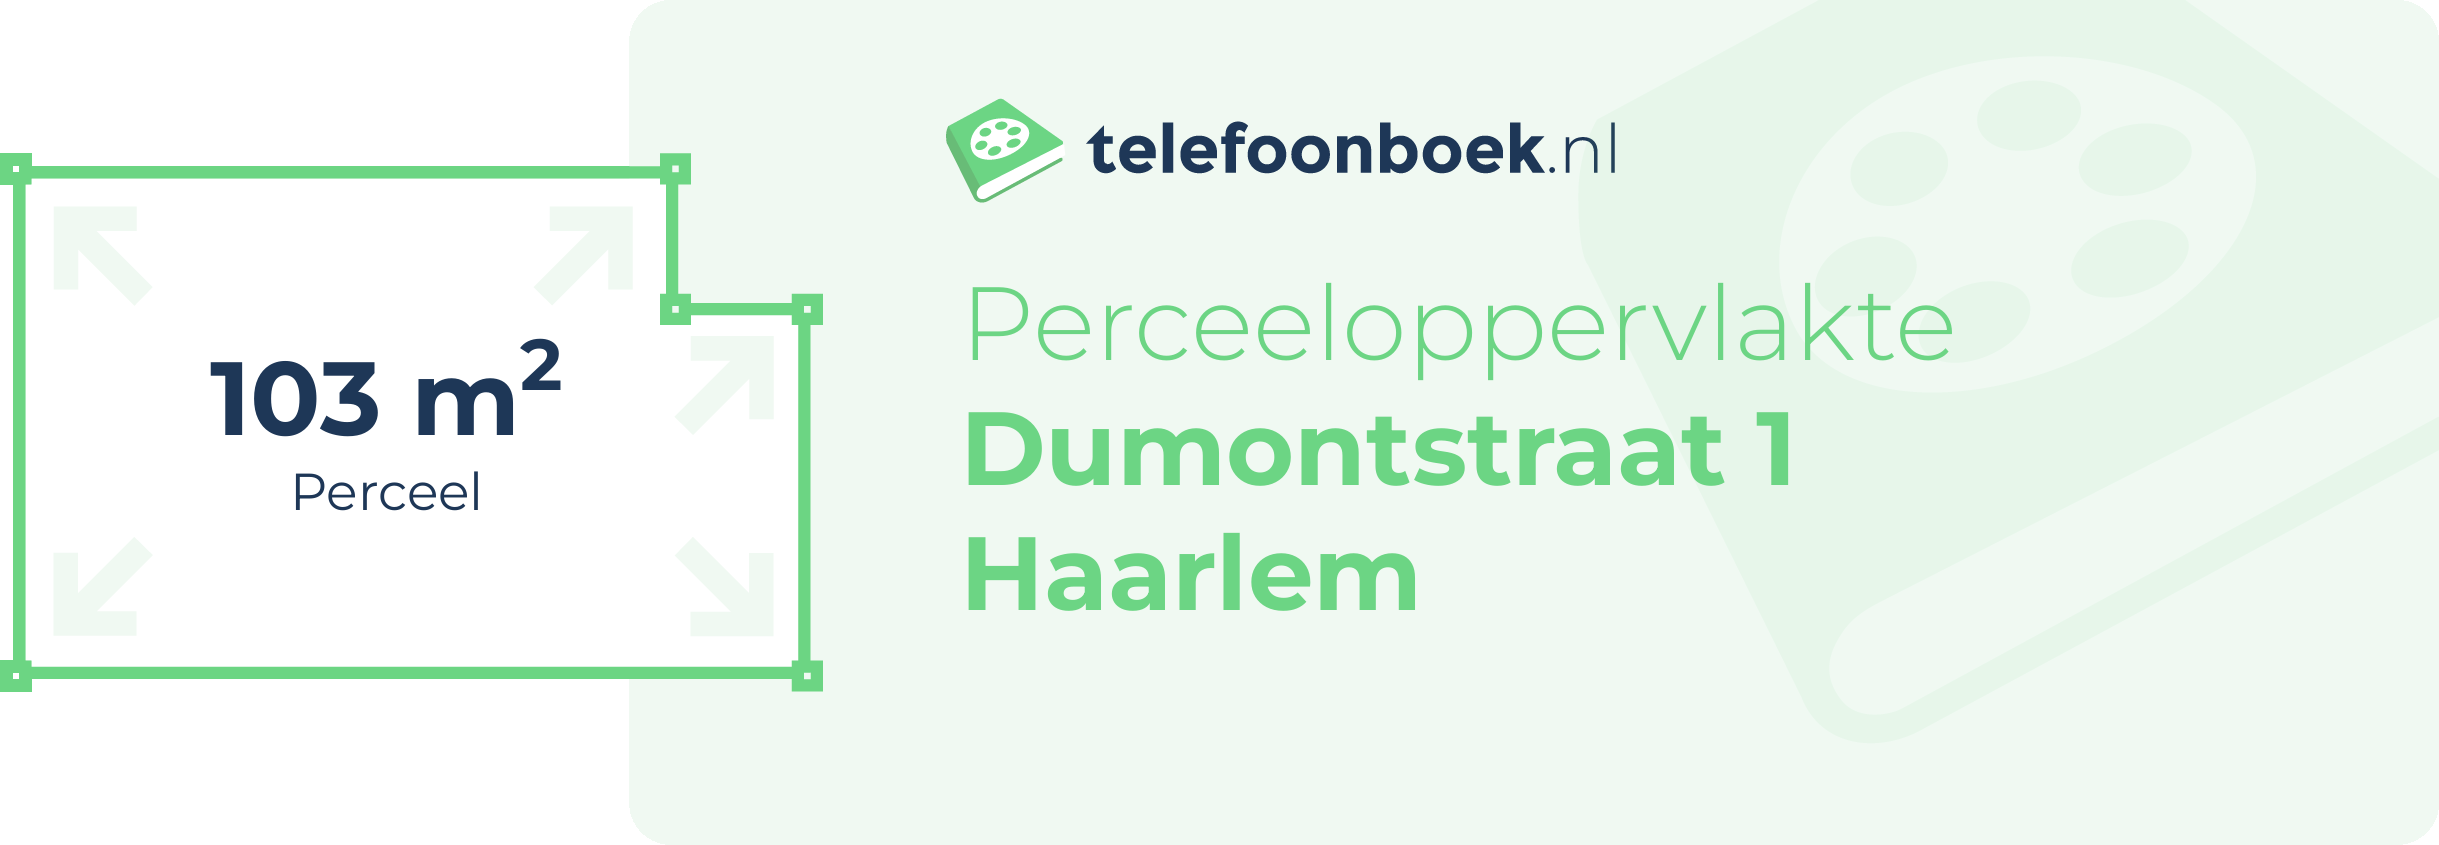 Perceeloppervlakte Dumontstraat 1 Haarlem